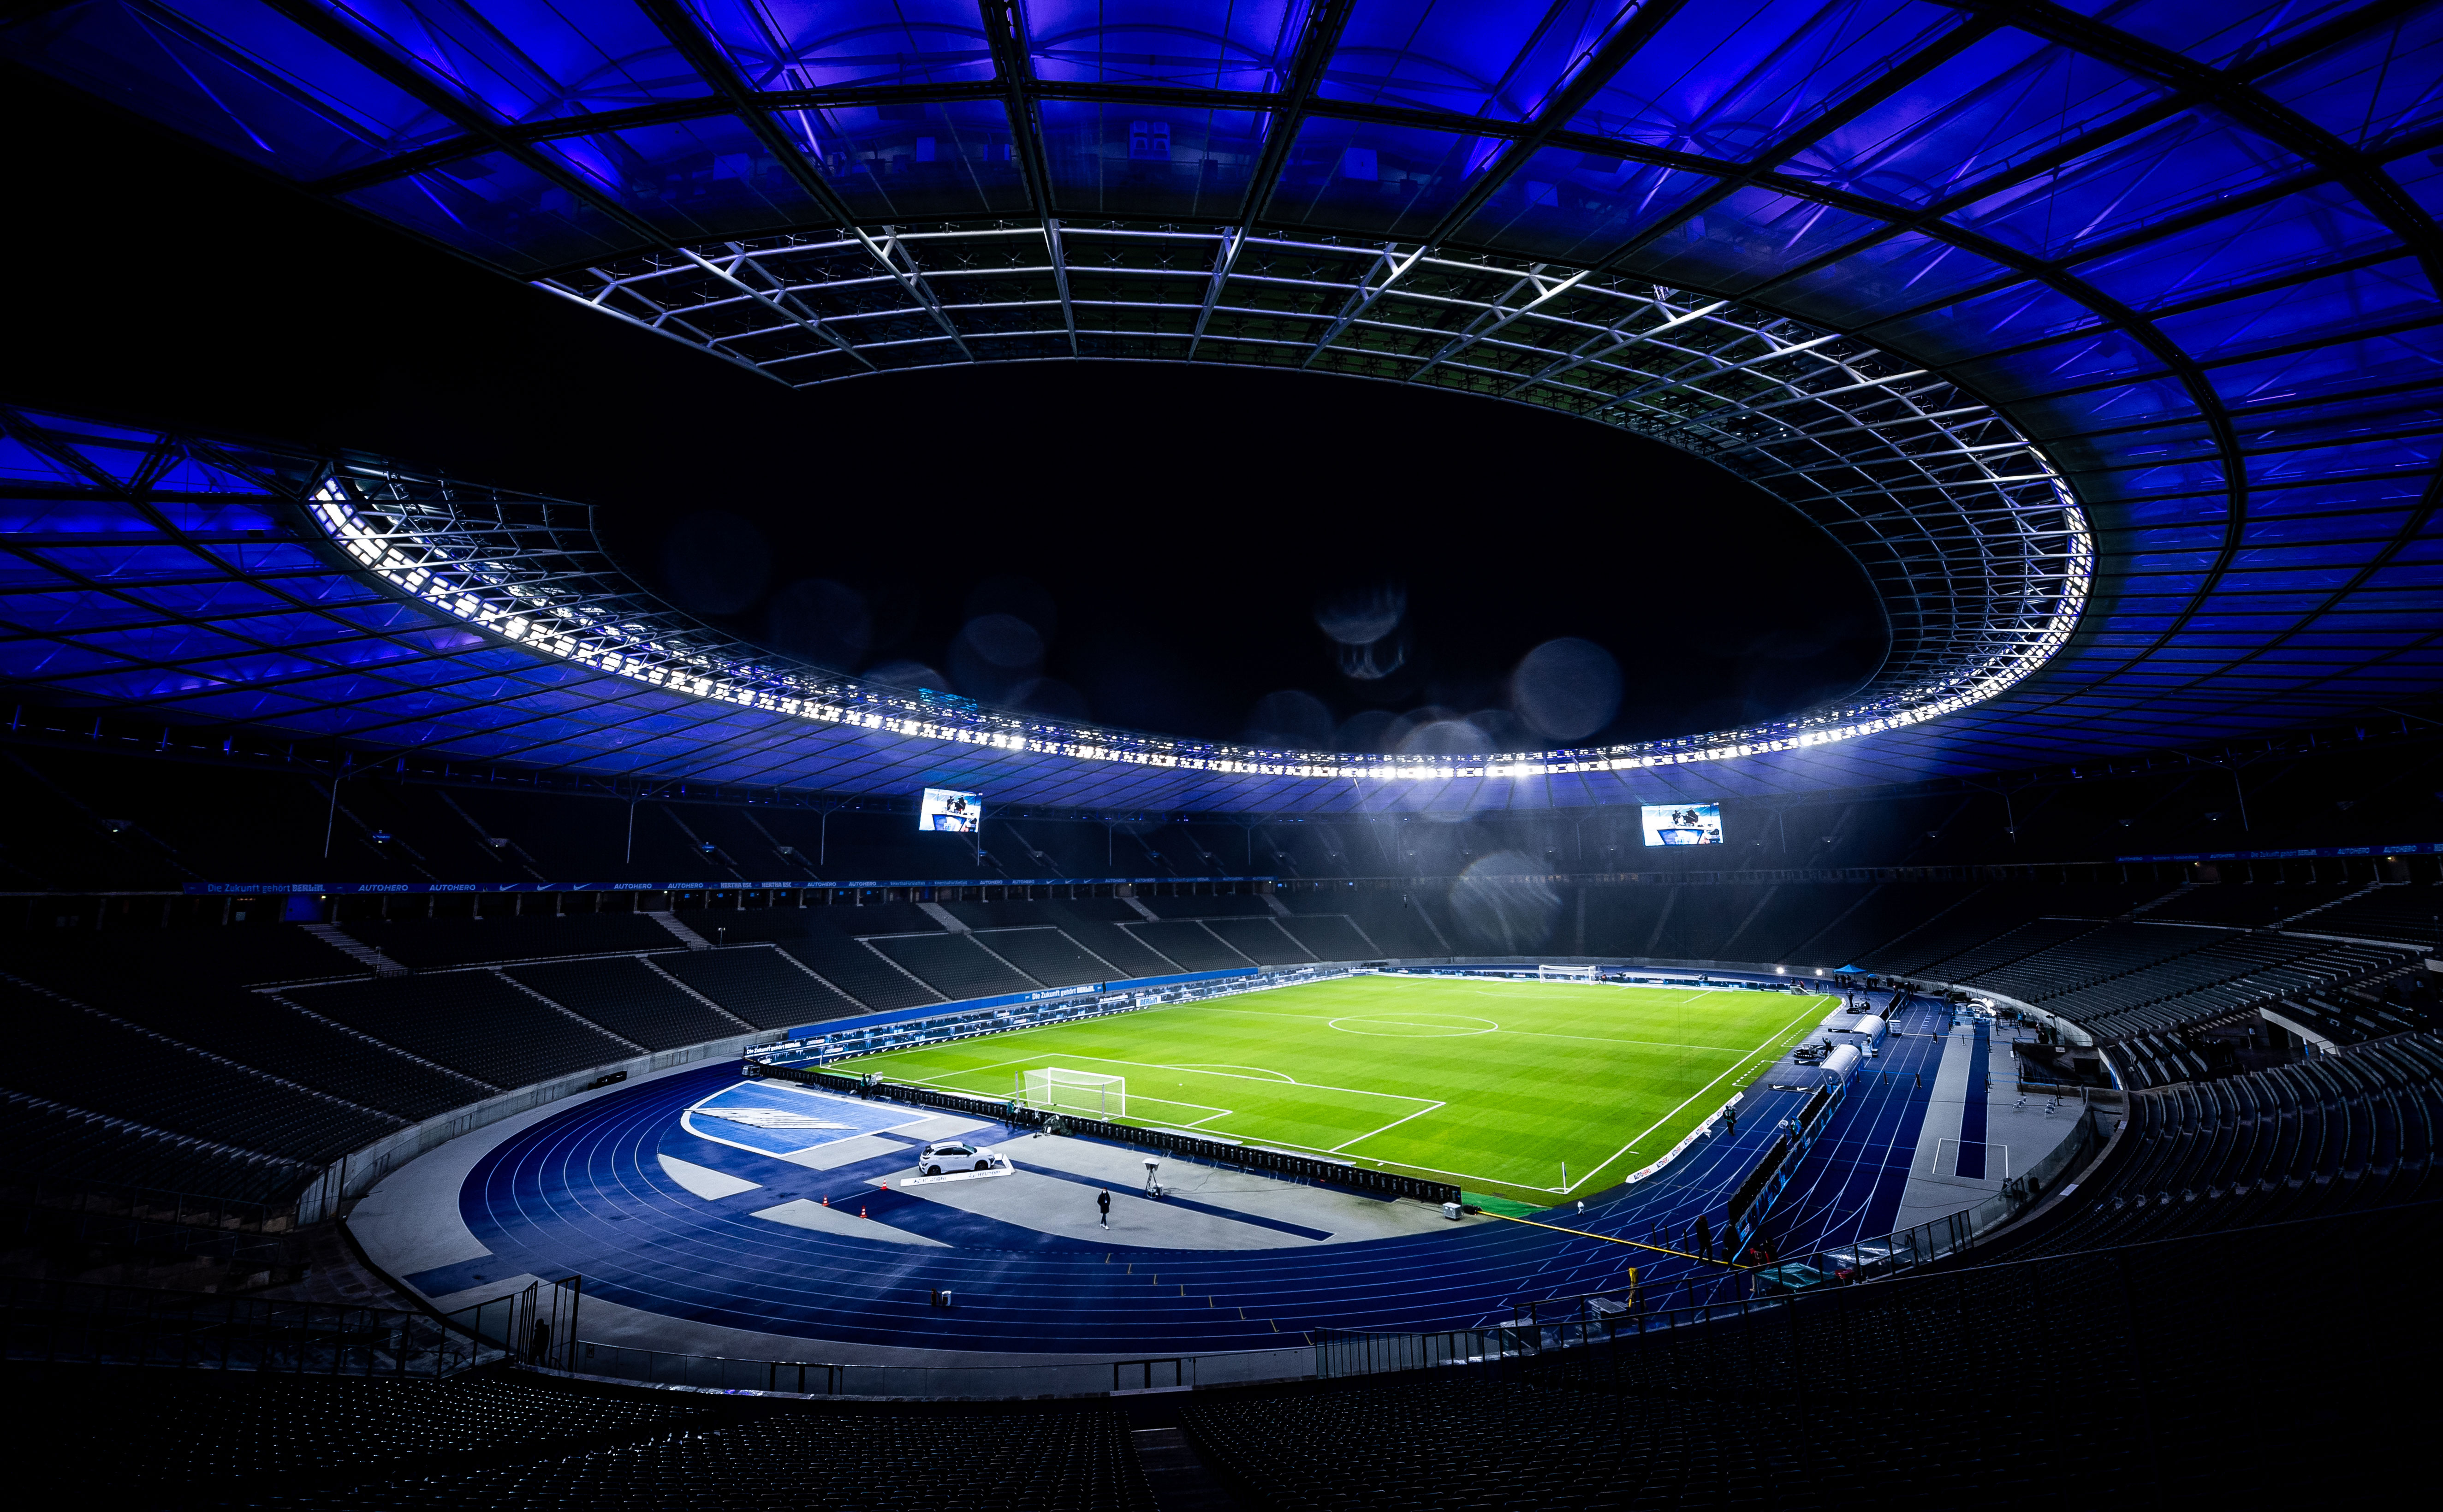 Das Olympiastadion bei Nacht mit blauer Beleuchtung.